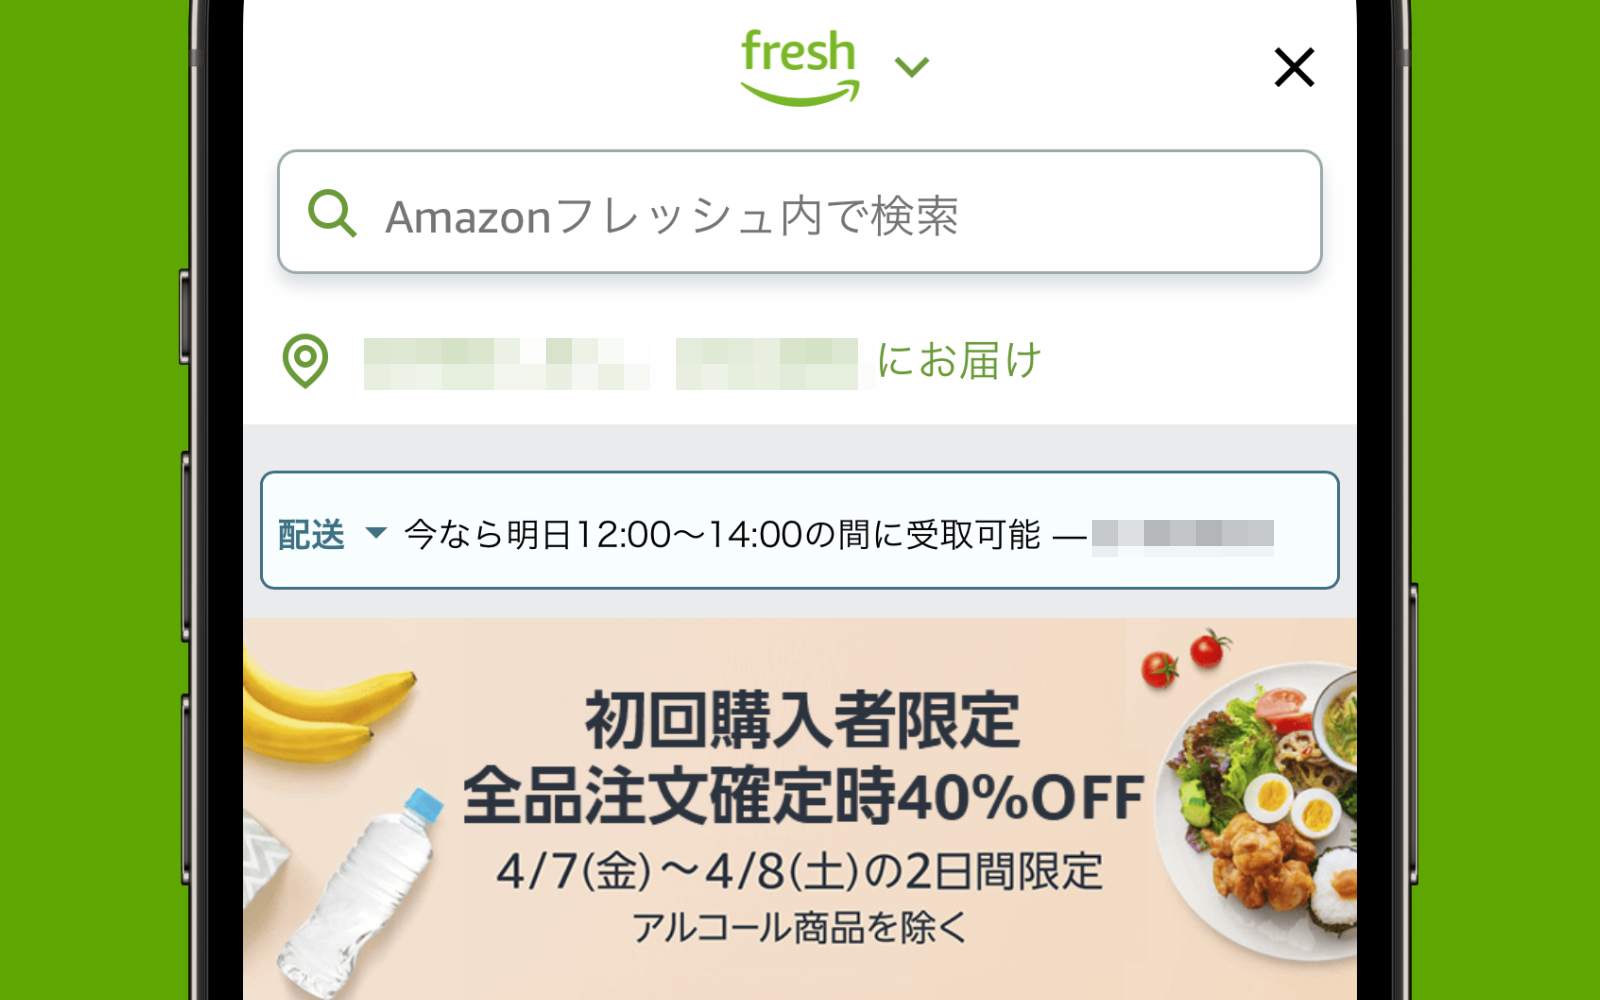 Amazon Fresh is having an amazing sale